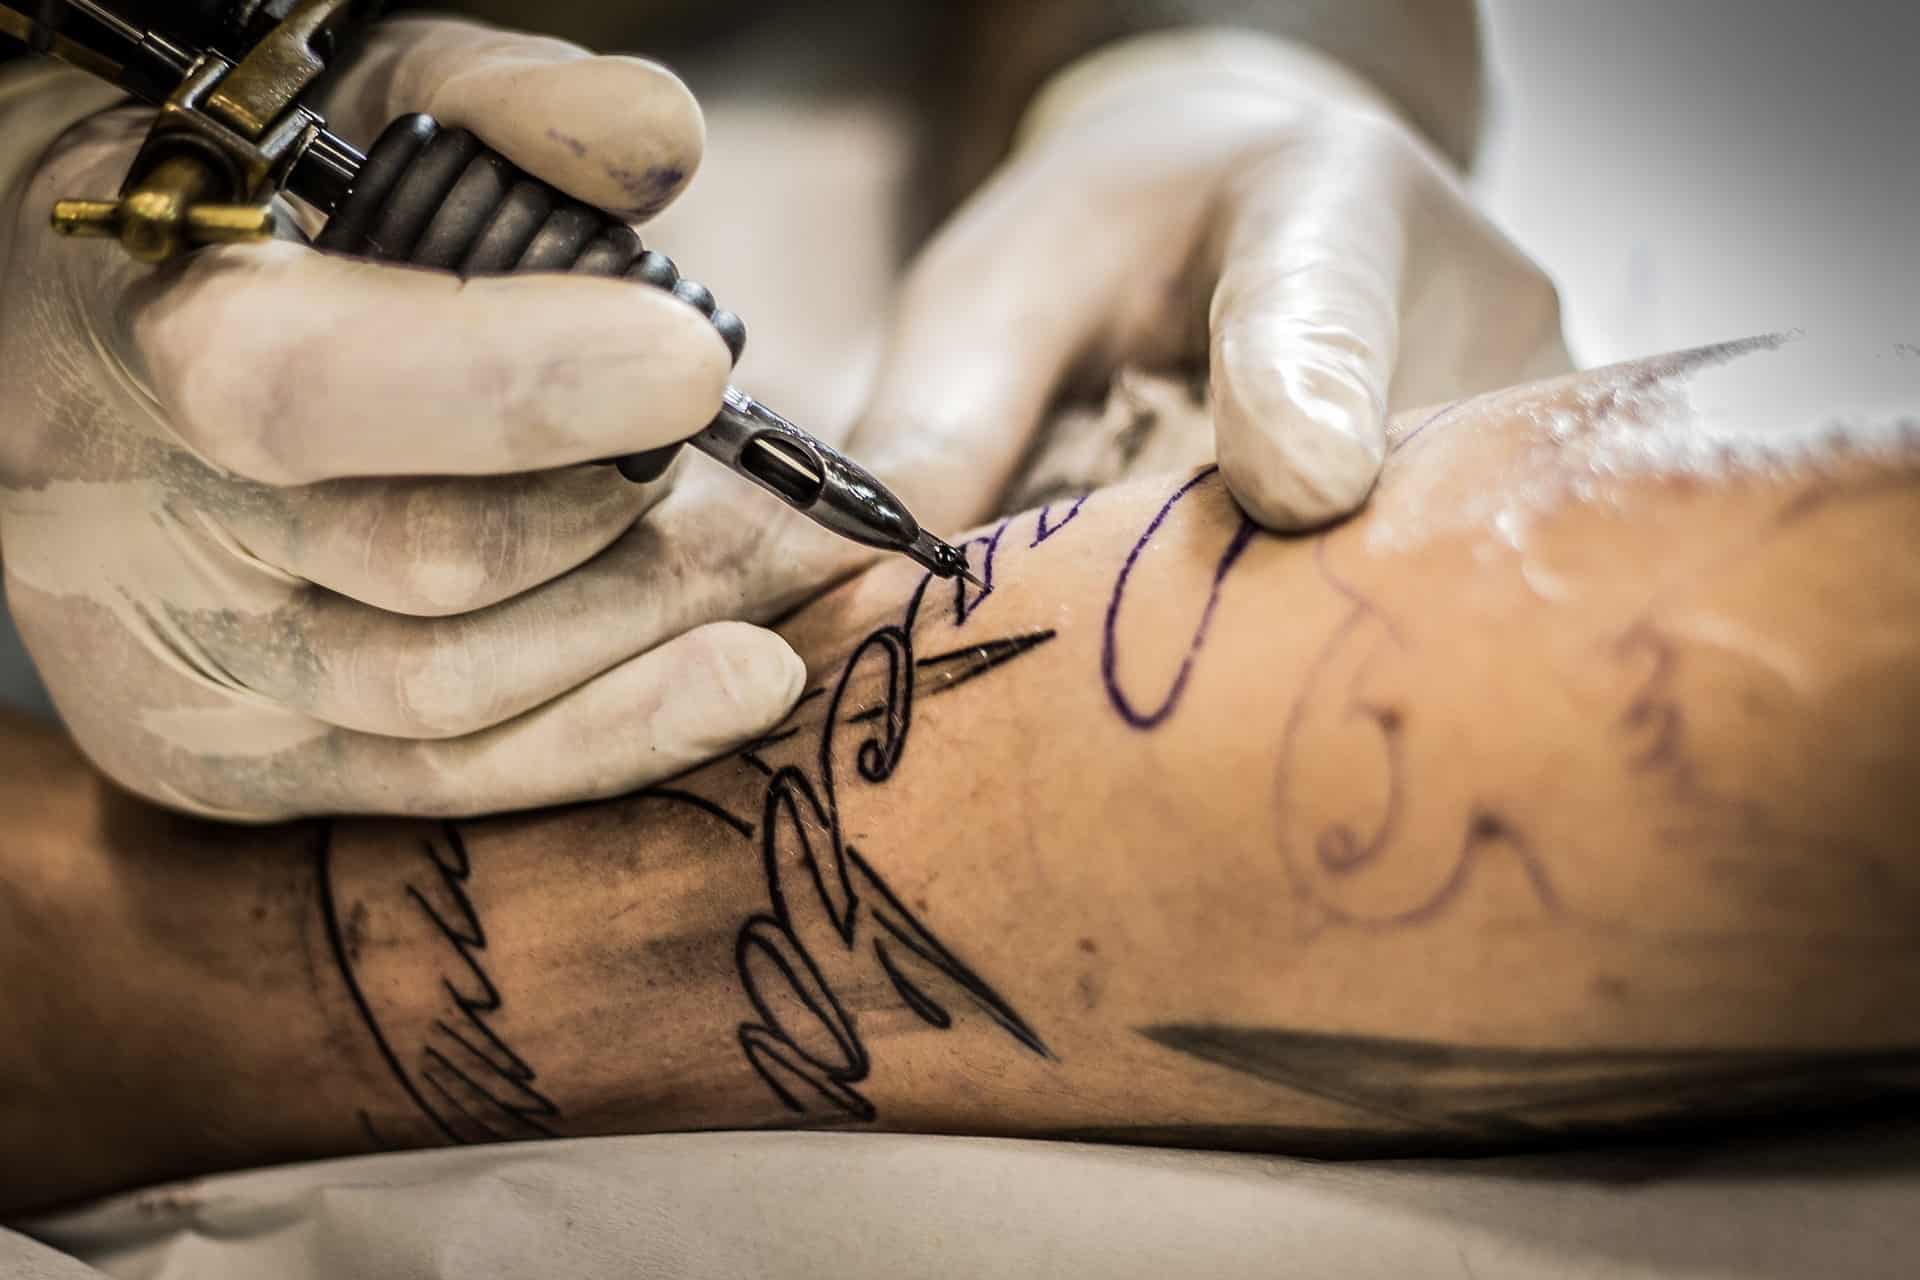 Conoscere le allergie ai tatuaggi spesso causate dall'inchiostro